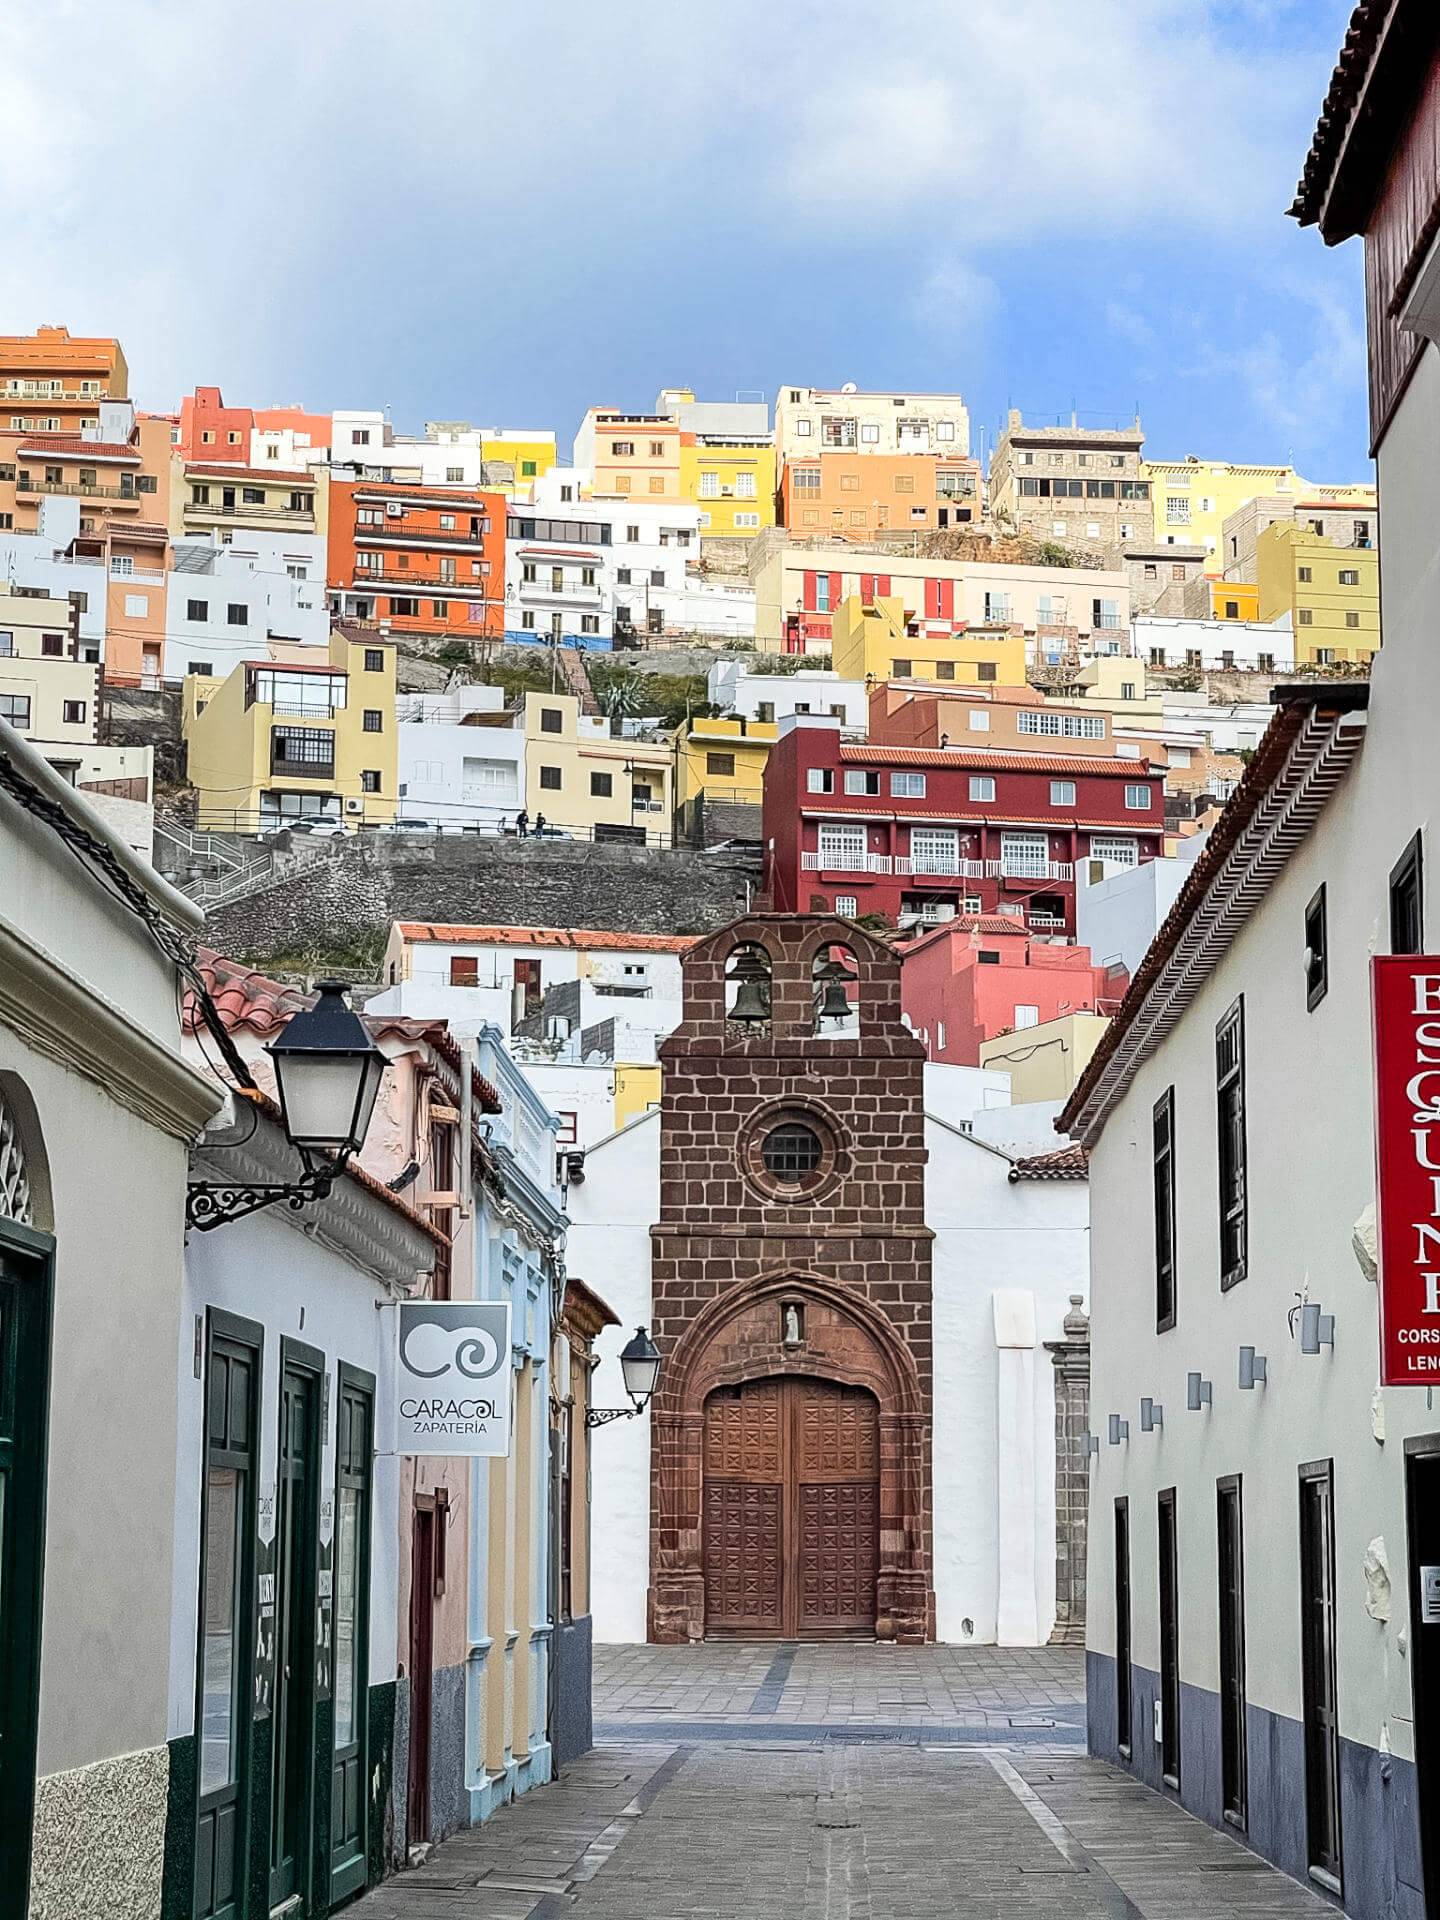 Start und Ziel des Weitwanderweges GR 132 ist die malerische Inselhauptstadt San Sebastián.